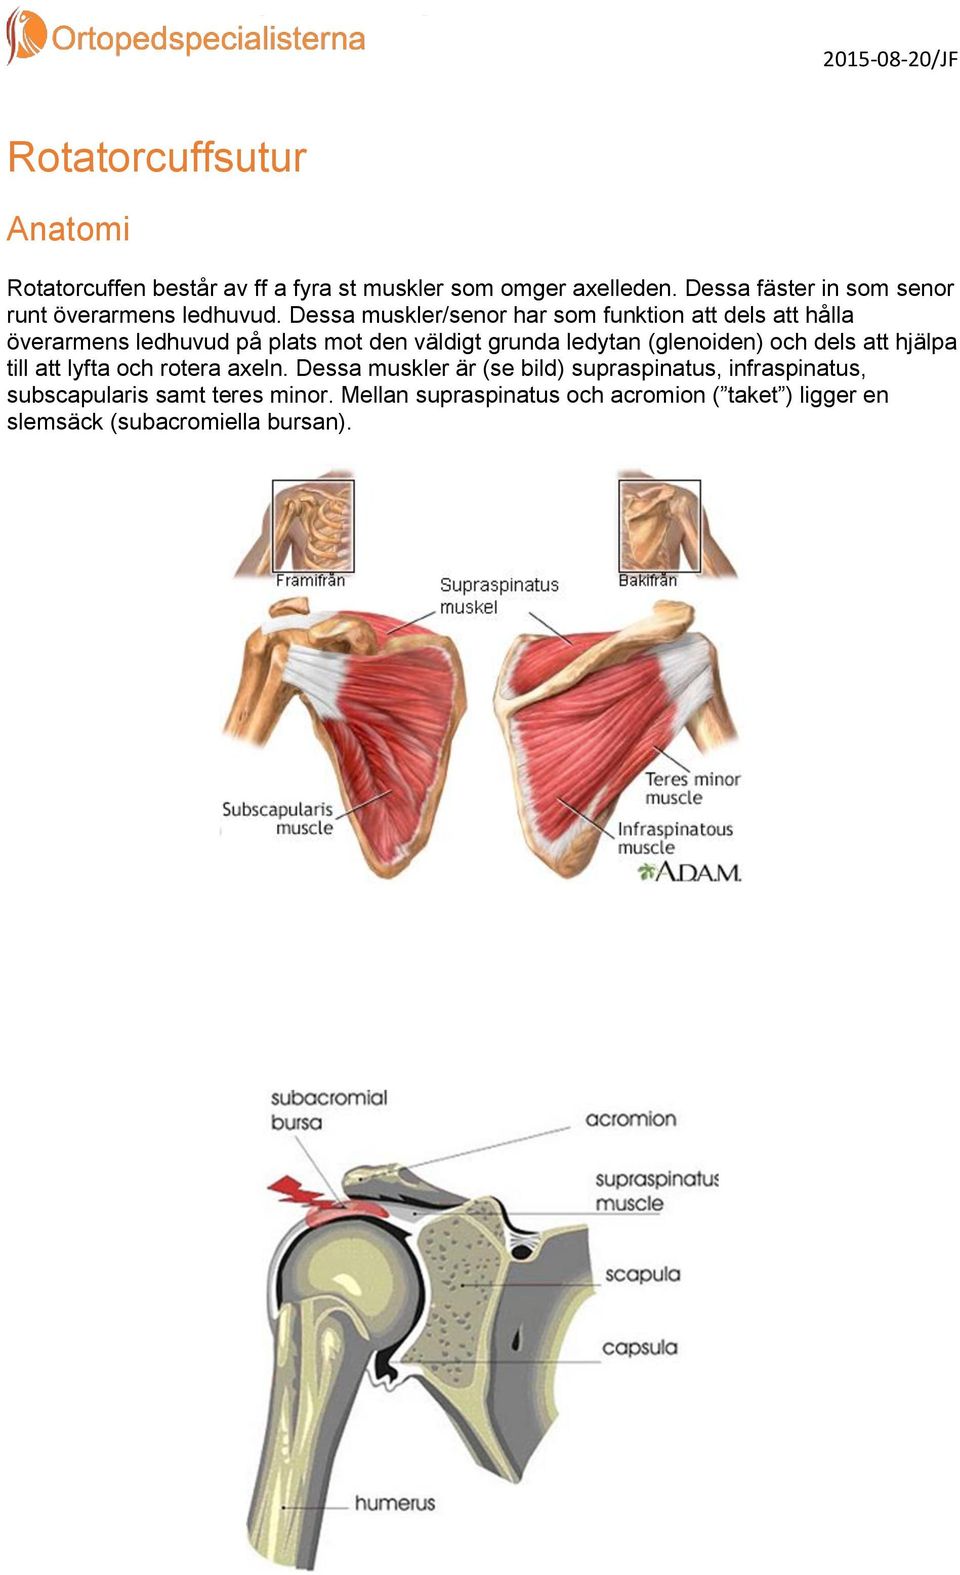 Dessa muskler/senor har som funktion att dels att hålla överarmens ledhuvud på plats mot den väldigt grunda ledytan